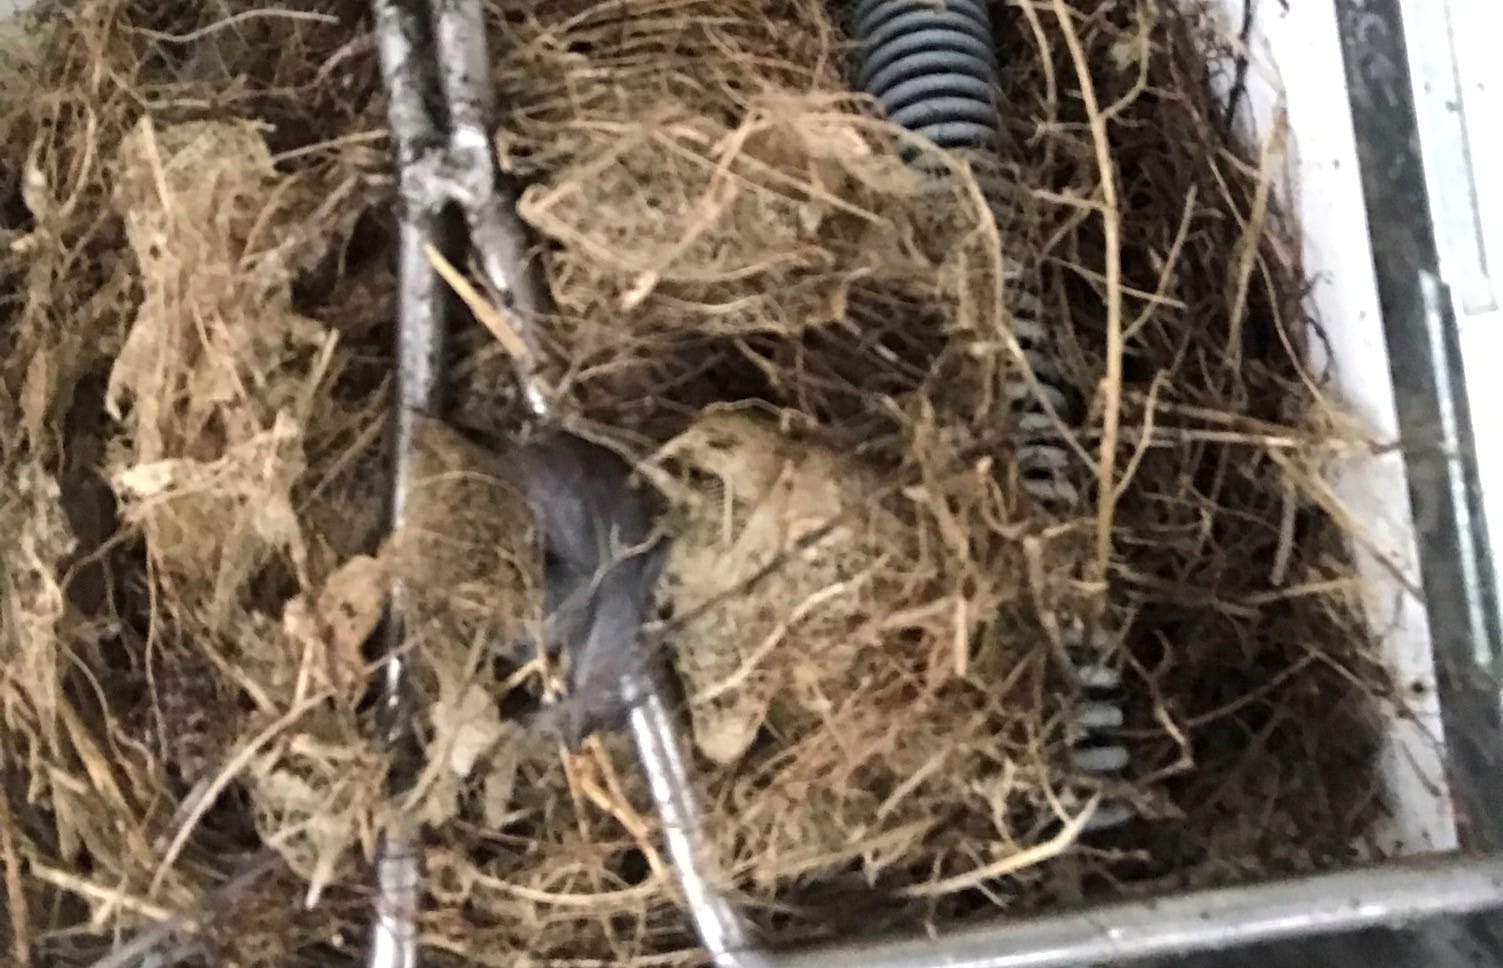 A titiponamu nest inside a possum trap.